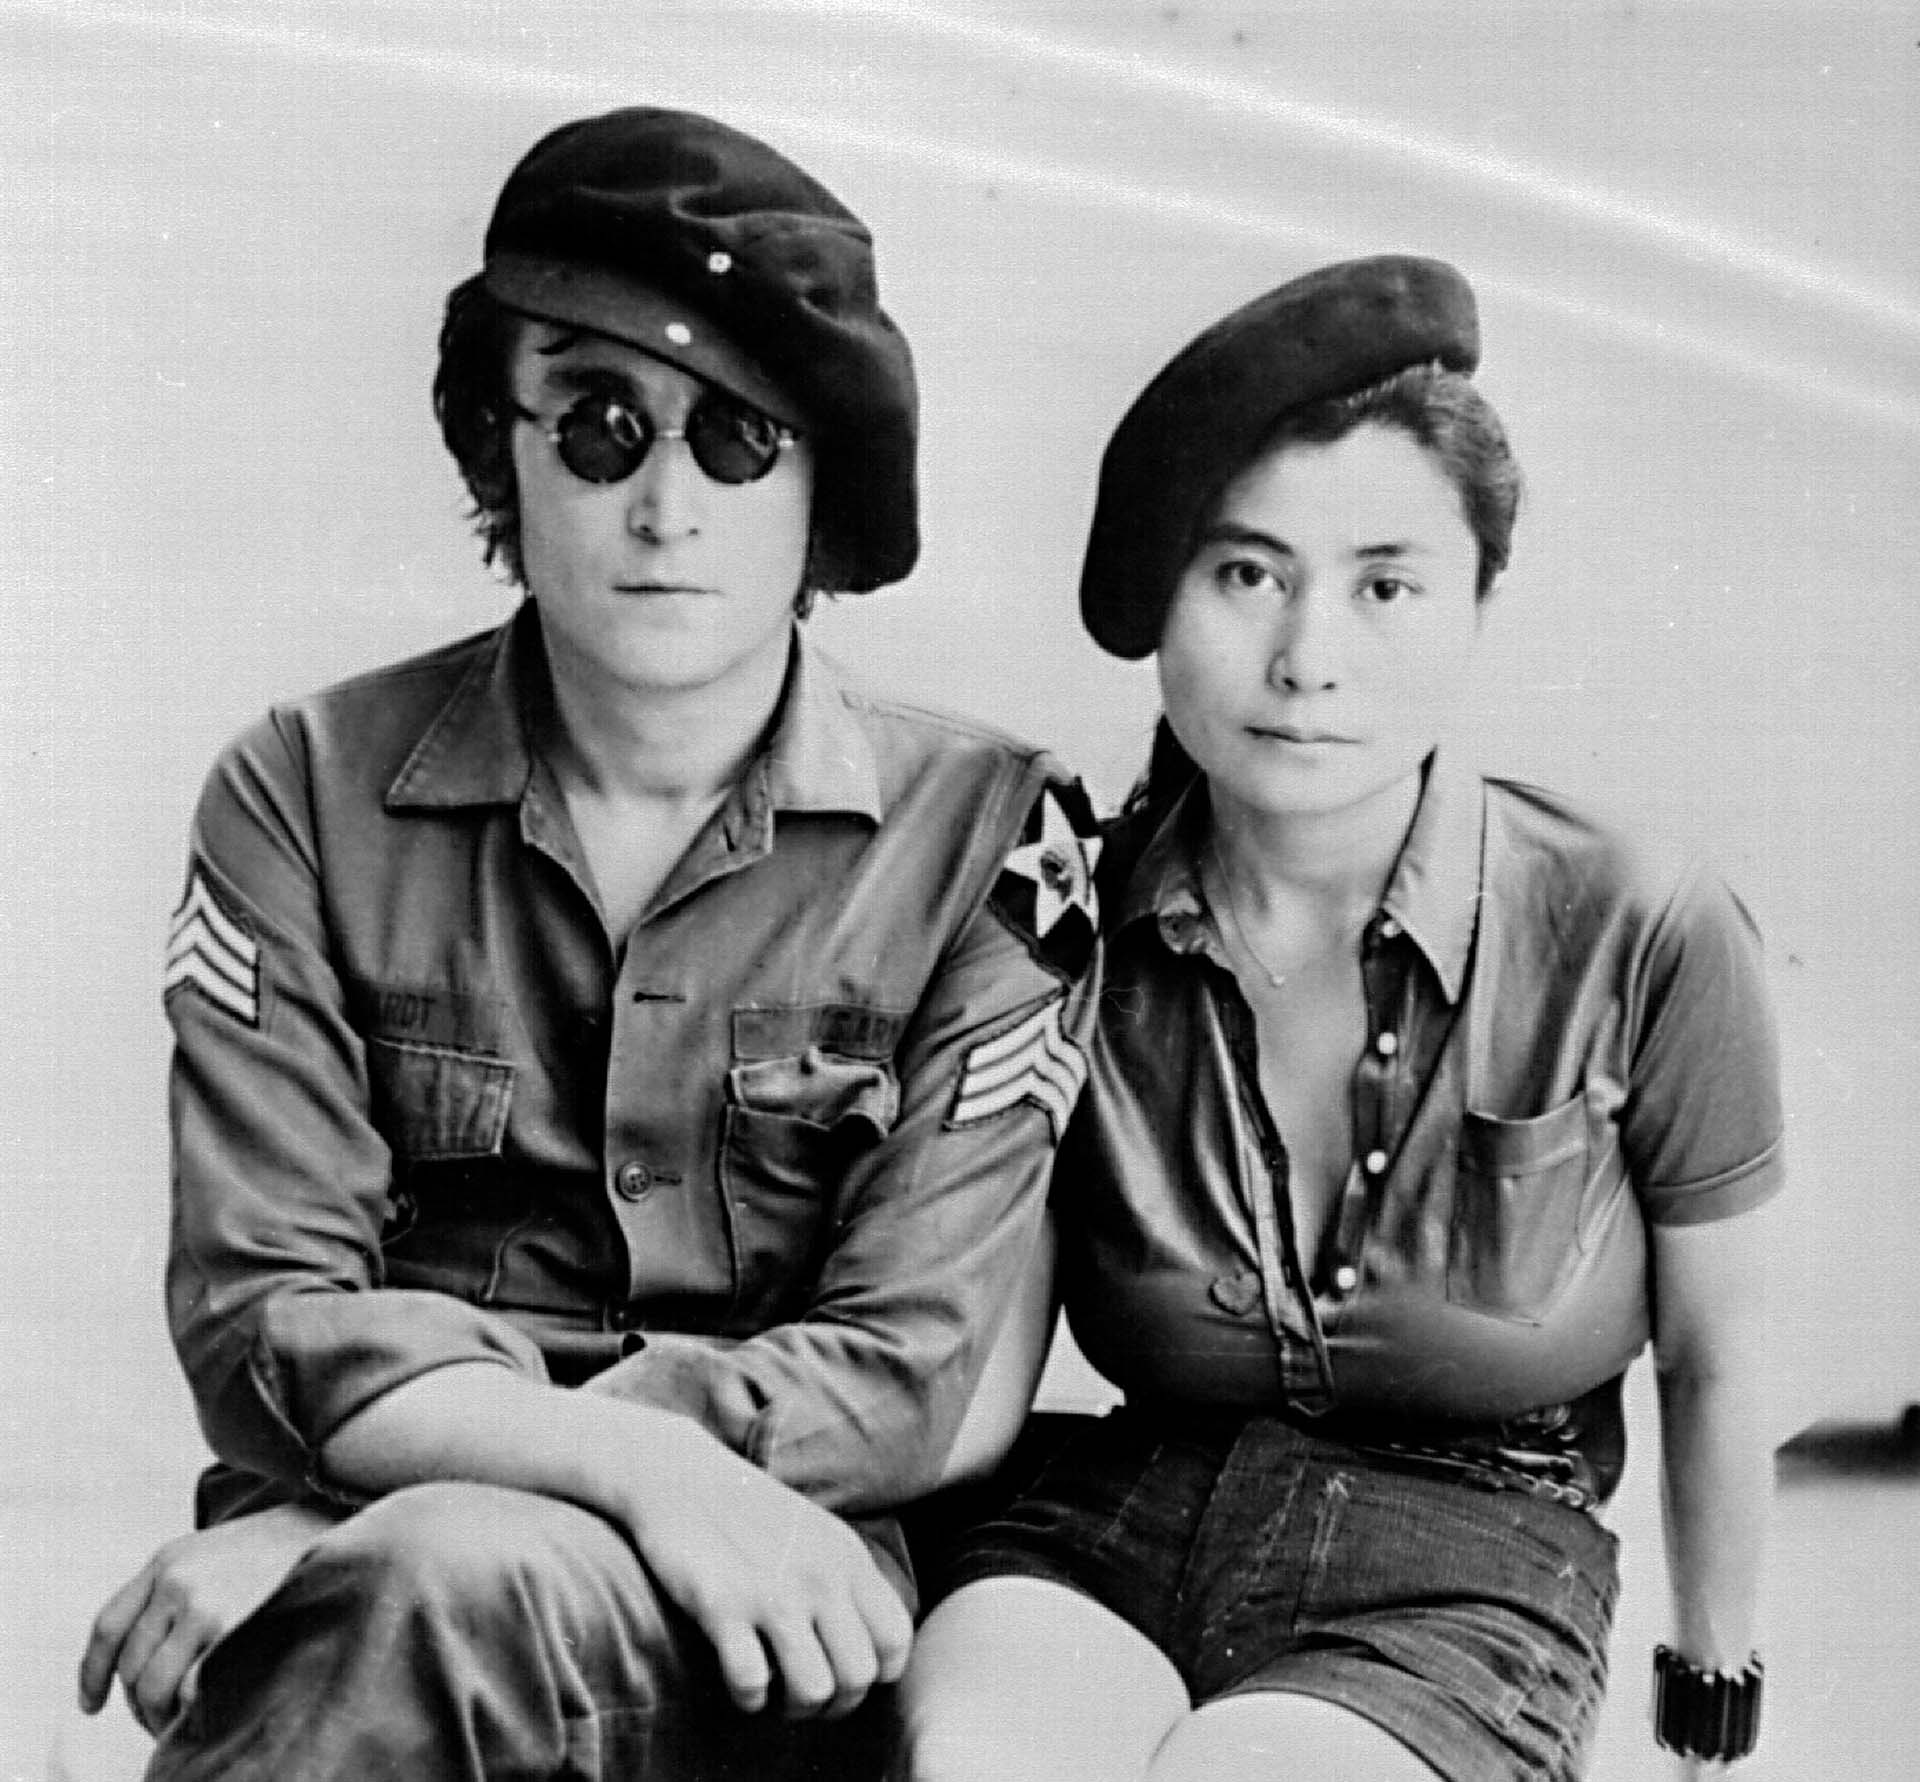 Yoko quedó embarazada de Sean y Lennon se retiró por cinco años. Cocinó, cambió pañales, se quedó en su casa a criar a su hijo. Tampoco fueron años totalmente tranquilos. Luchó contra sus contradicciones, contra sus fantasmas, con sus enojos repentinos (Mediapunch/Shutterstock)
